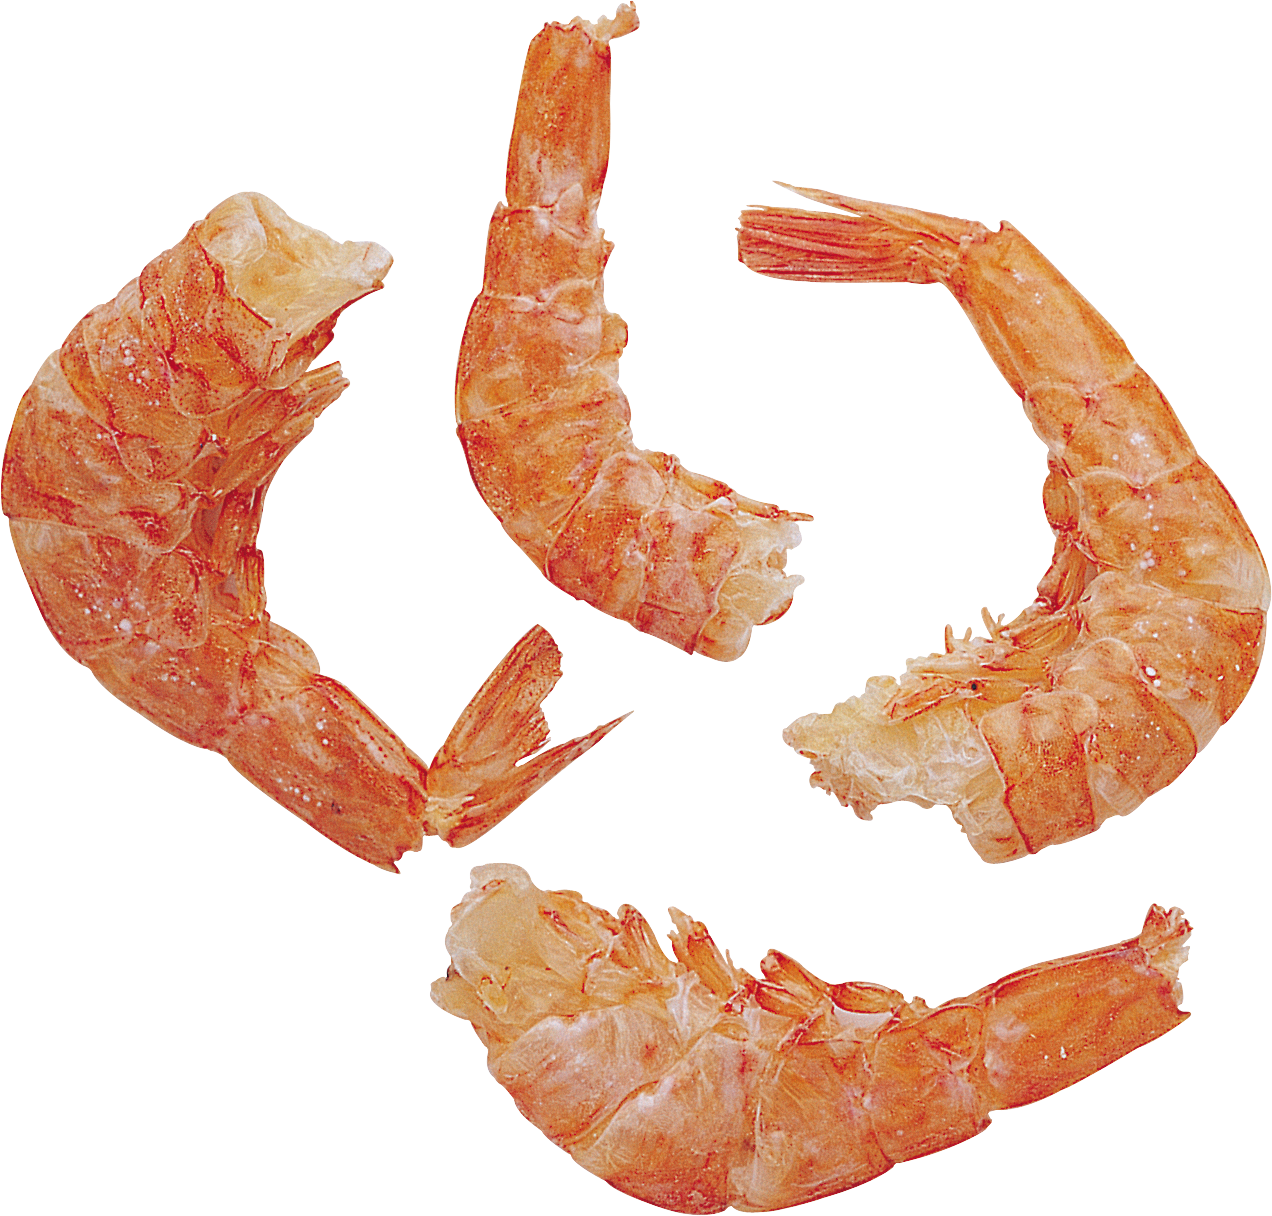 Clean shrimps PNG image